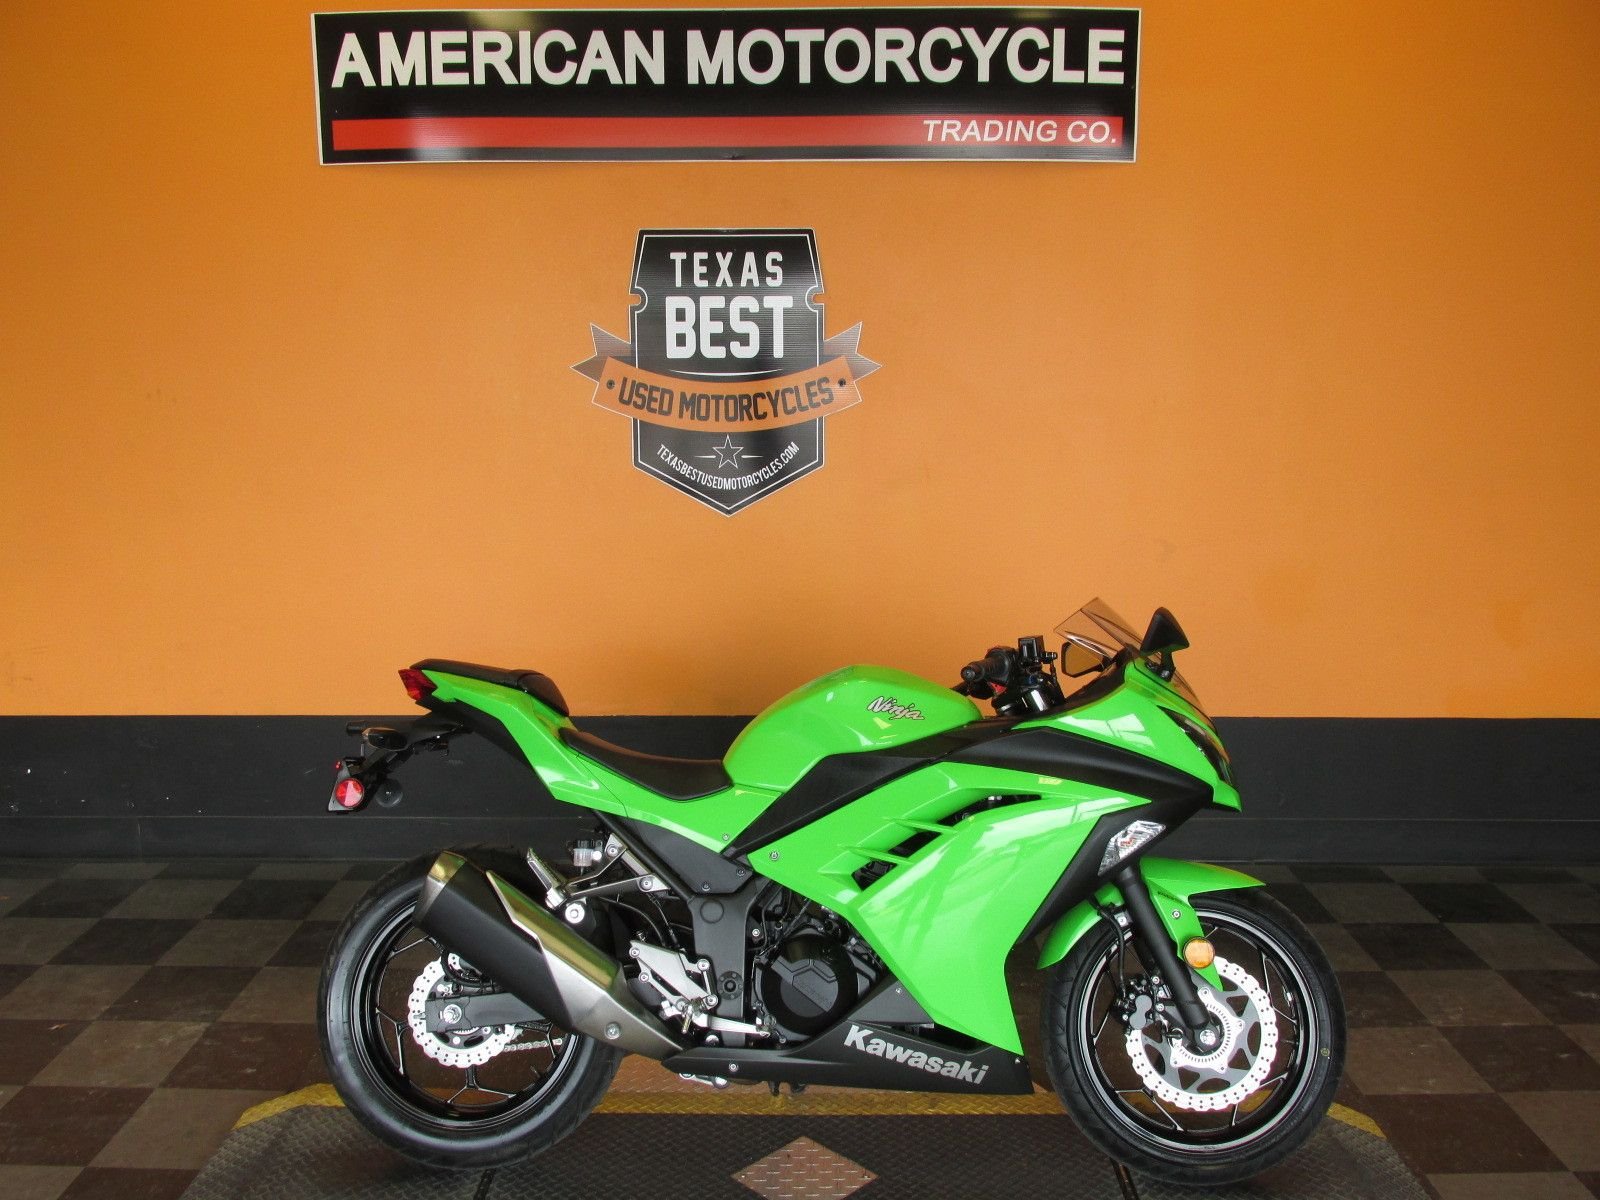 2015 Kawasaki Ninja | American Motorcycle Trading Company - Used Harley  Davidson Motorcycles